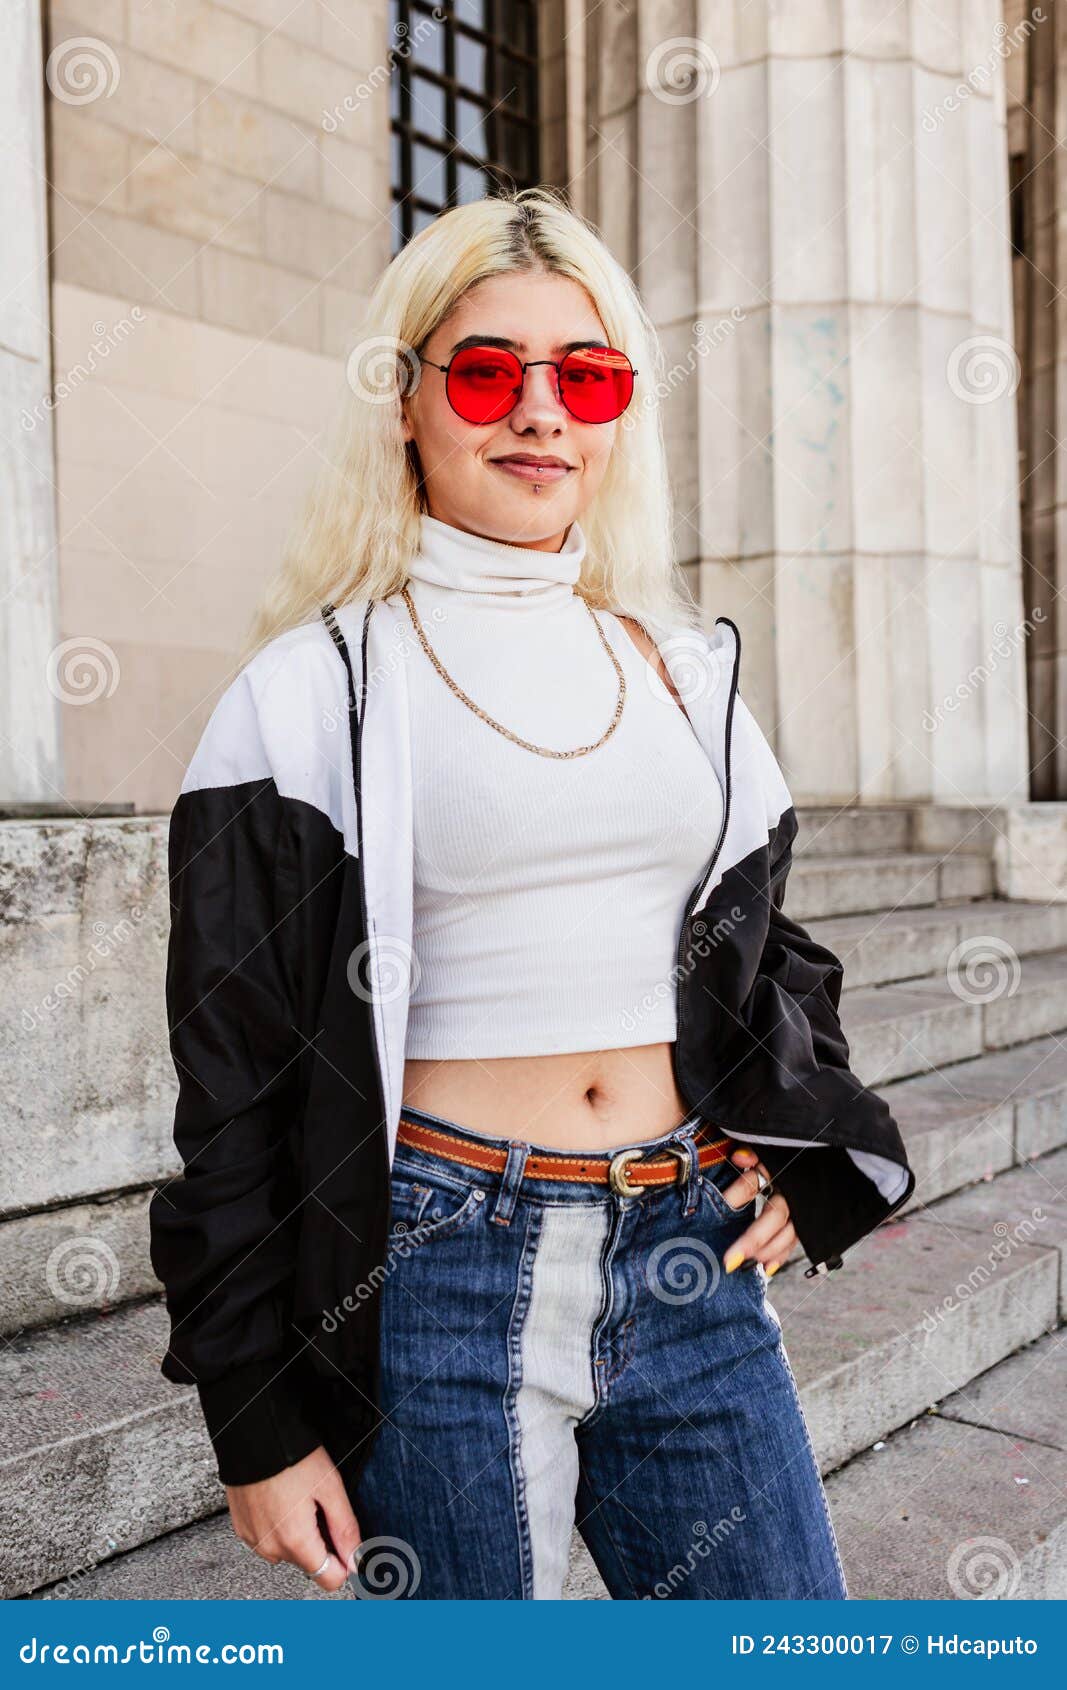 Latina Joven Y Sonriente Moderna Con Gafas Rojas, Camiseta Blanca Y Jeans En Las Escaleras De La Universidad. Retrato Vertic Imagen de archivo - de inconformista, 243300017